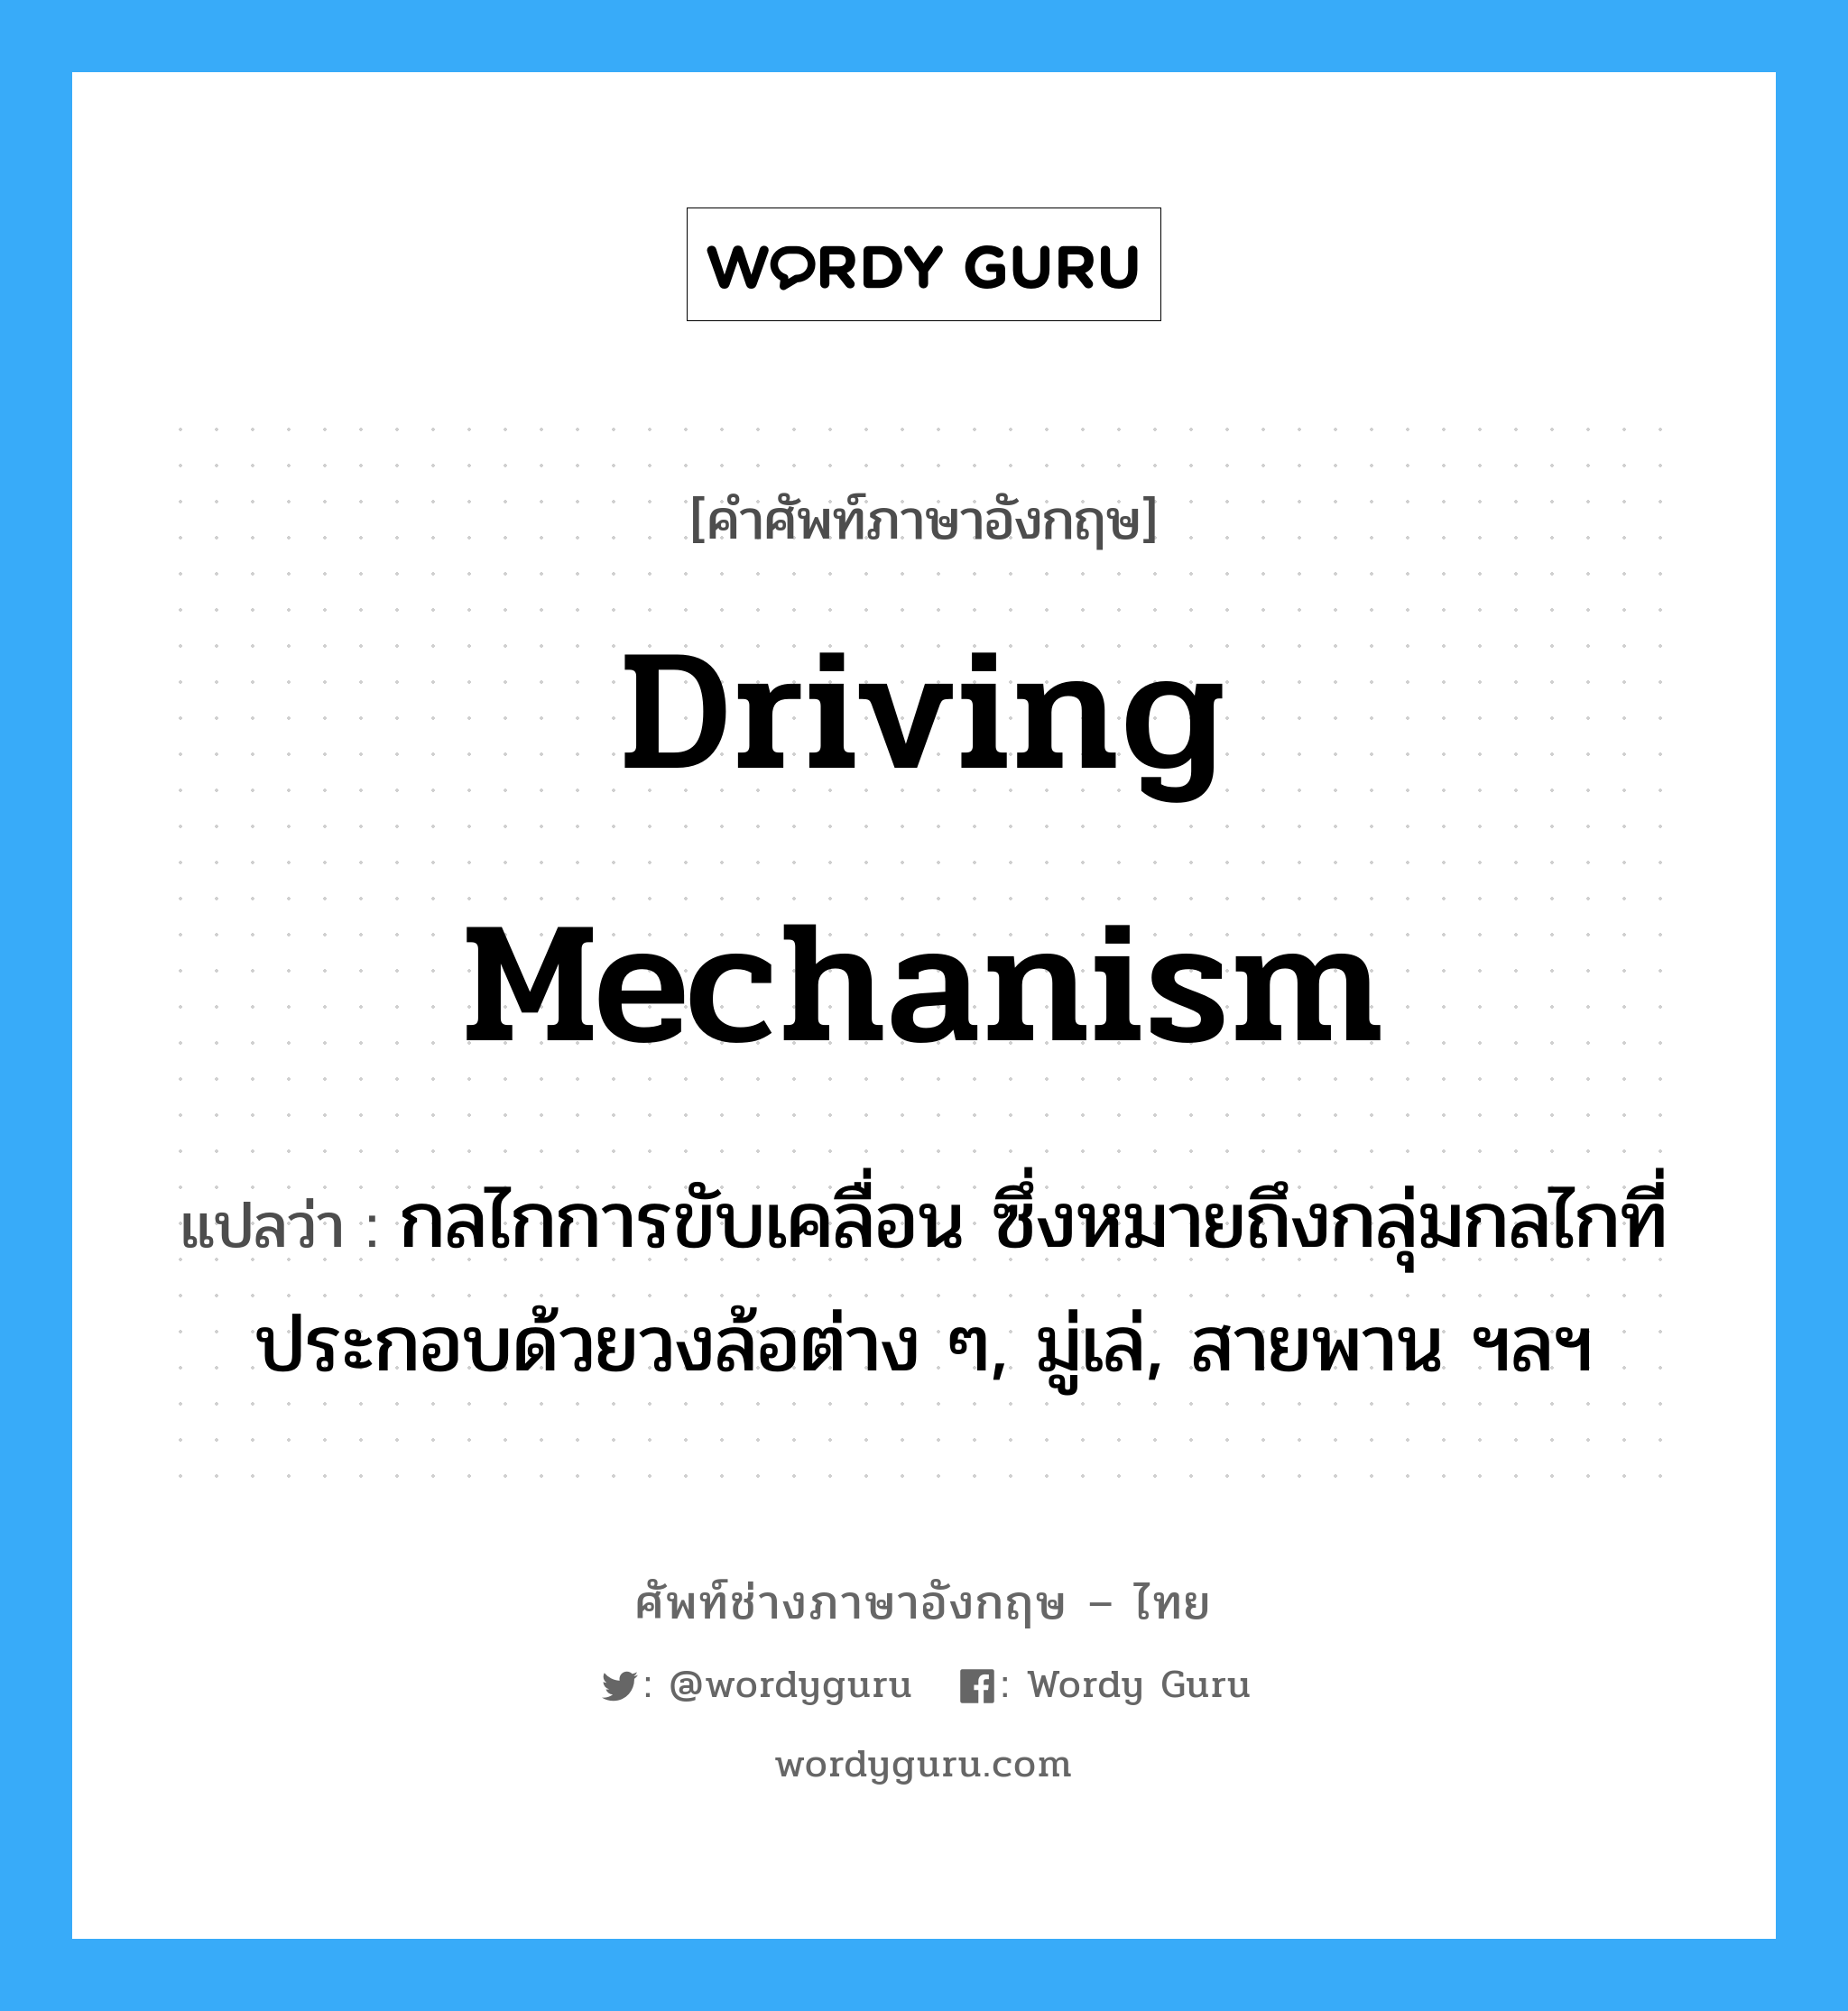 driving mechanism แปลว่า?, คำศัพท์ช่างภาษาอังกฤษ - ไทย driving mechanism คำศัพท์ภาษาอังกฤษ driving mechanism แปลว่า กลไกการขับเคลื่อน ซึ่งหมายถึงกลุ่มกลไกที่ประกอบด้วยวงล้อต่าง ๆ, มู่เล่, สายพาน ฯลฯ